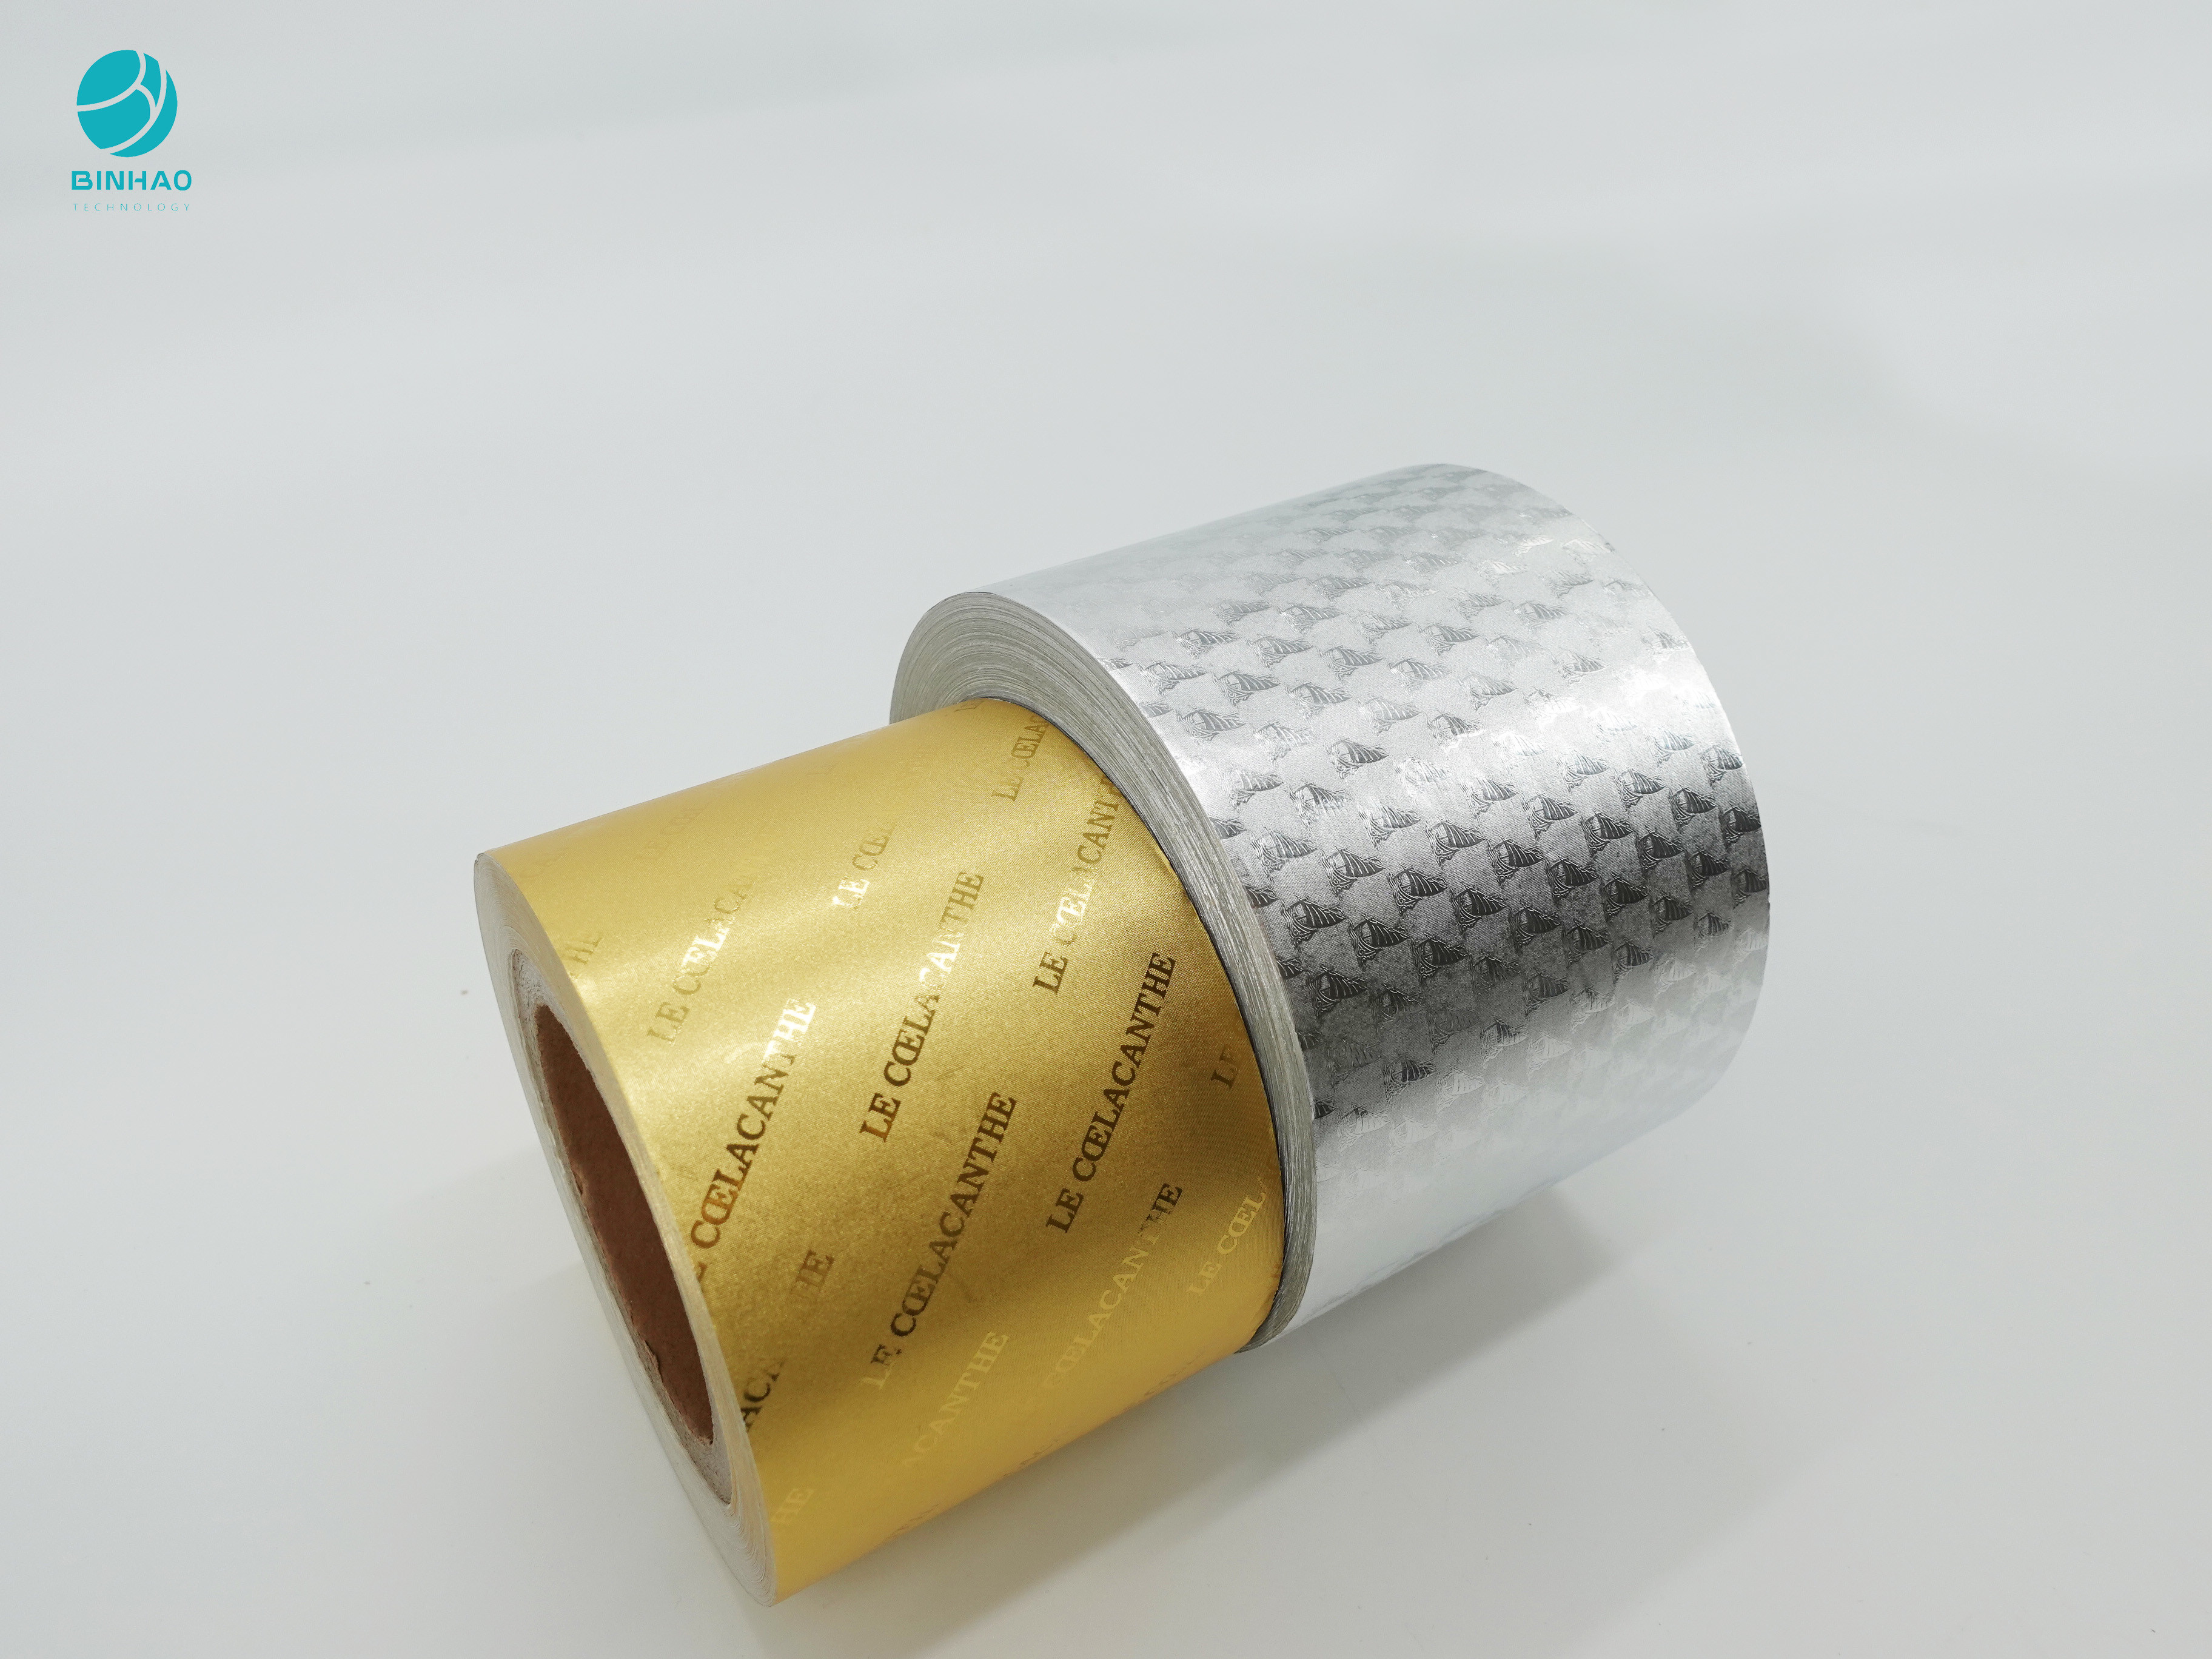 Papier do pakowania papierosów w złotą srebrzystą folię aluminiową o jakości spożywczej